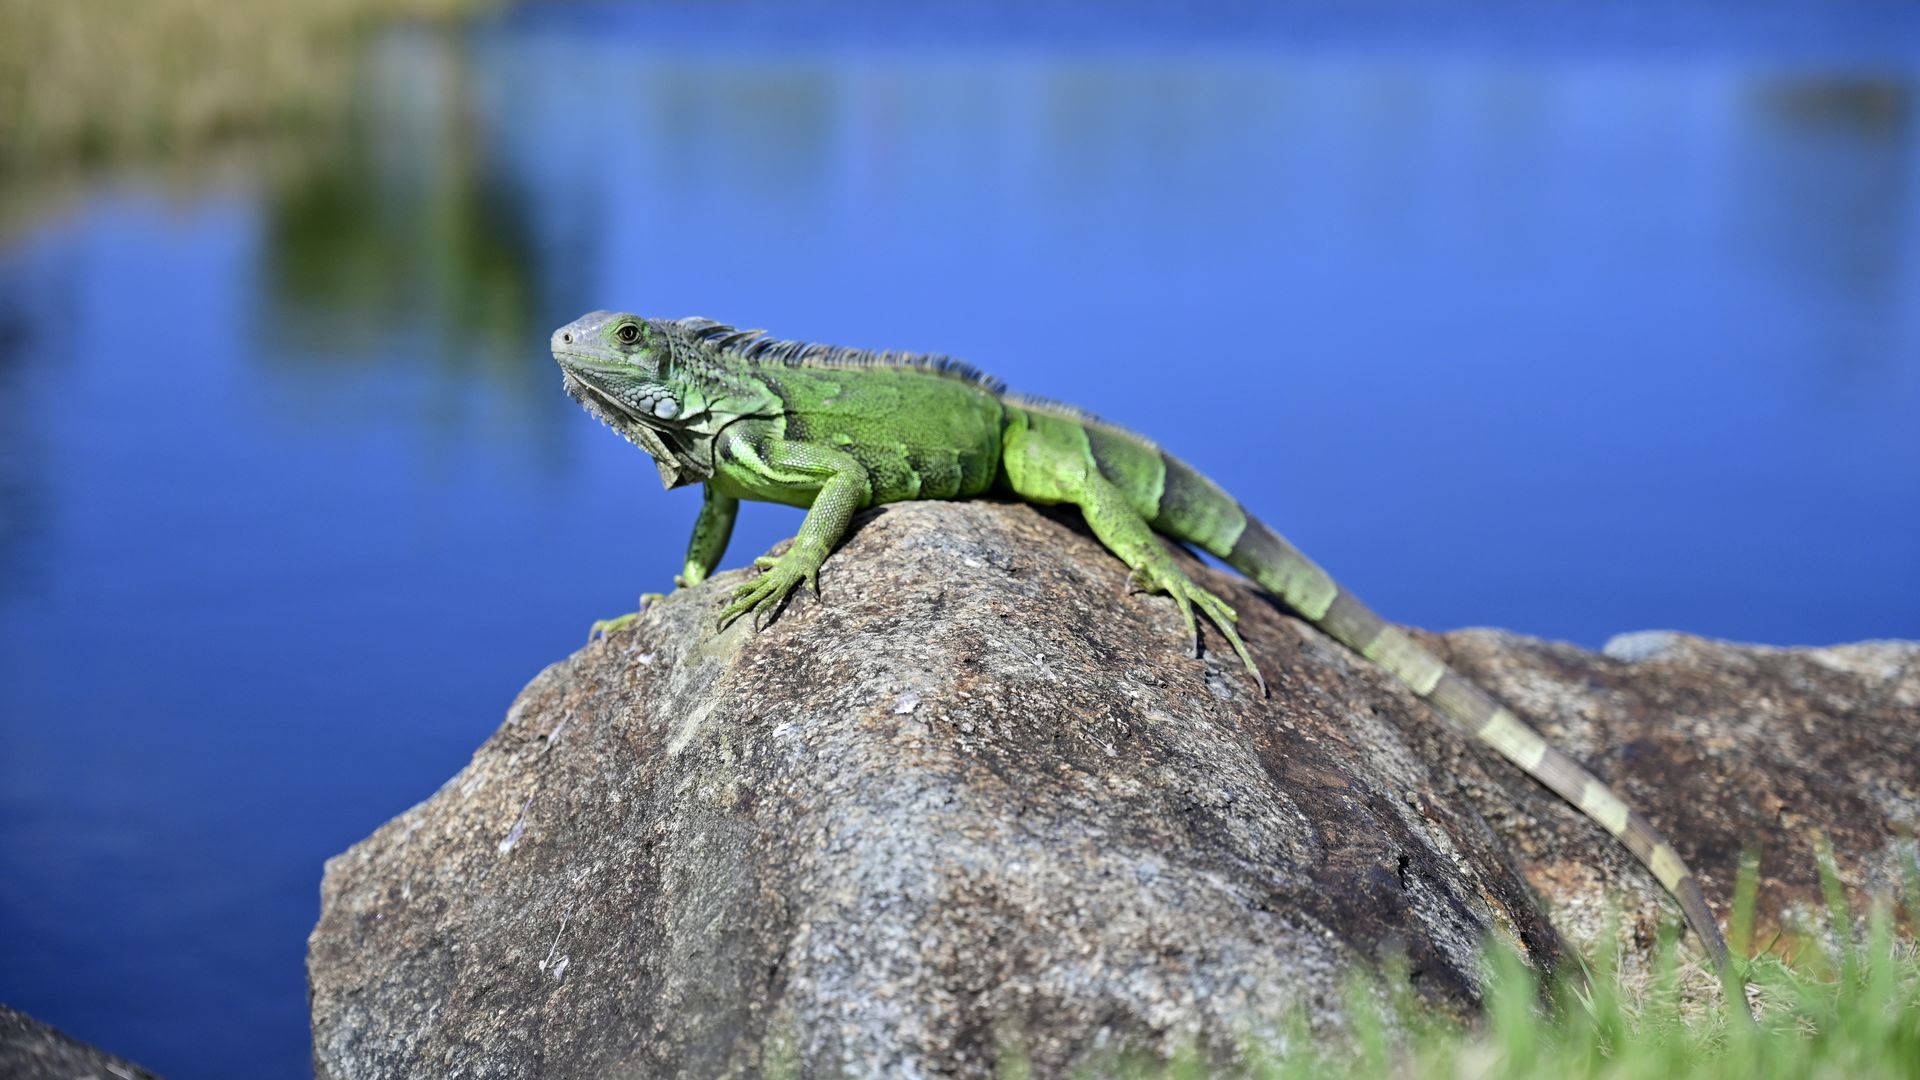 An iguana on a rock.